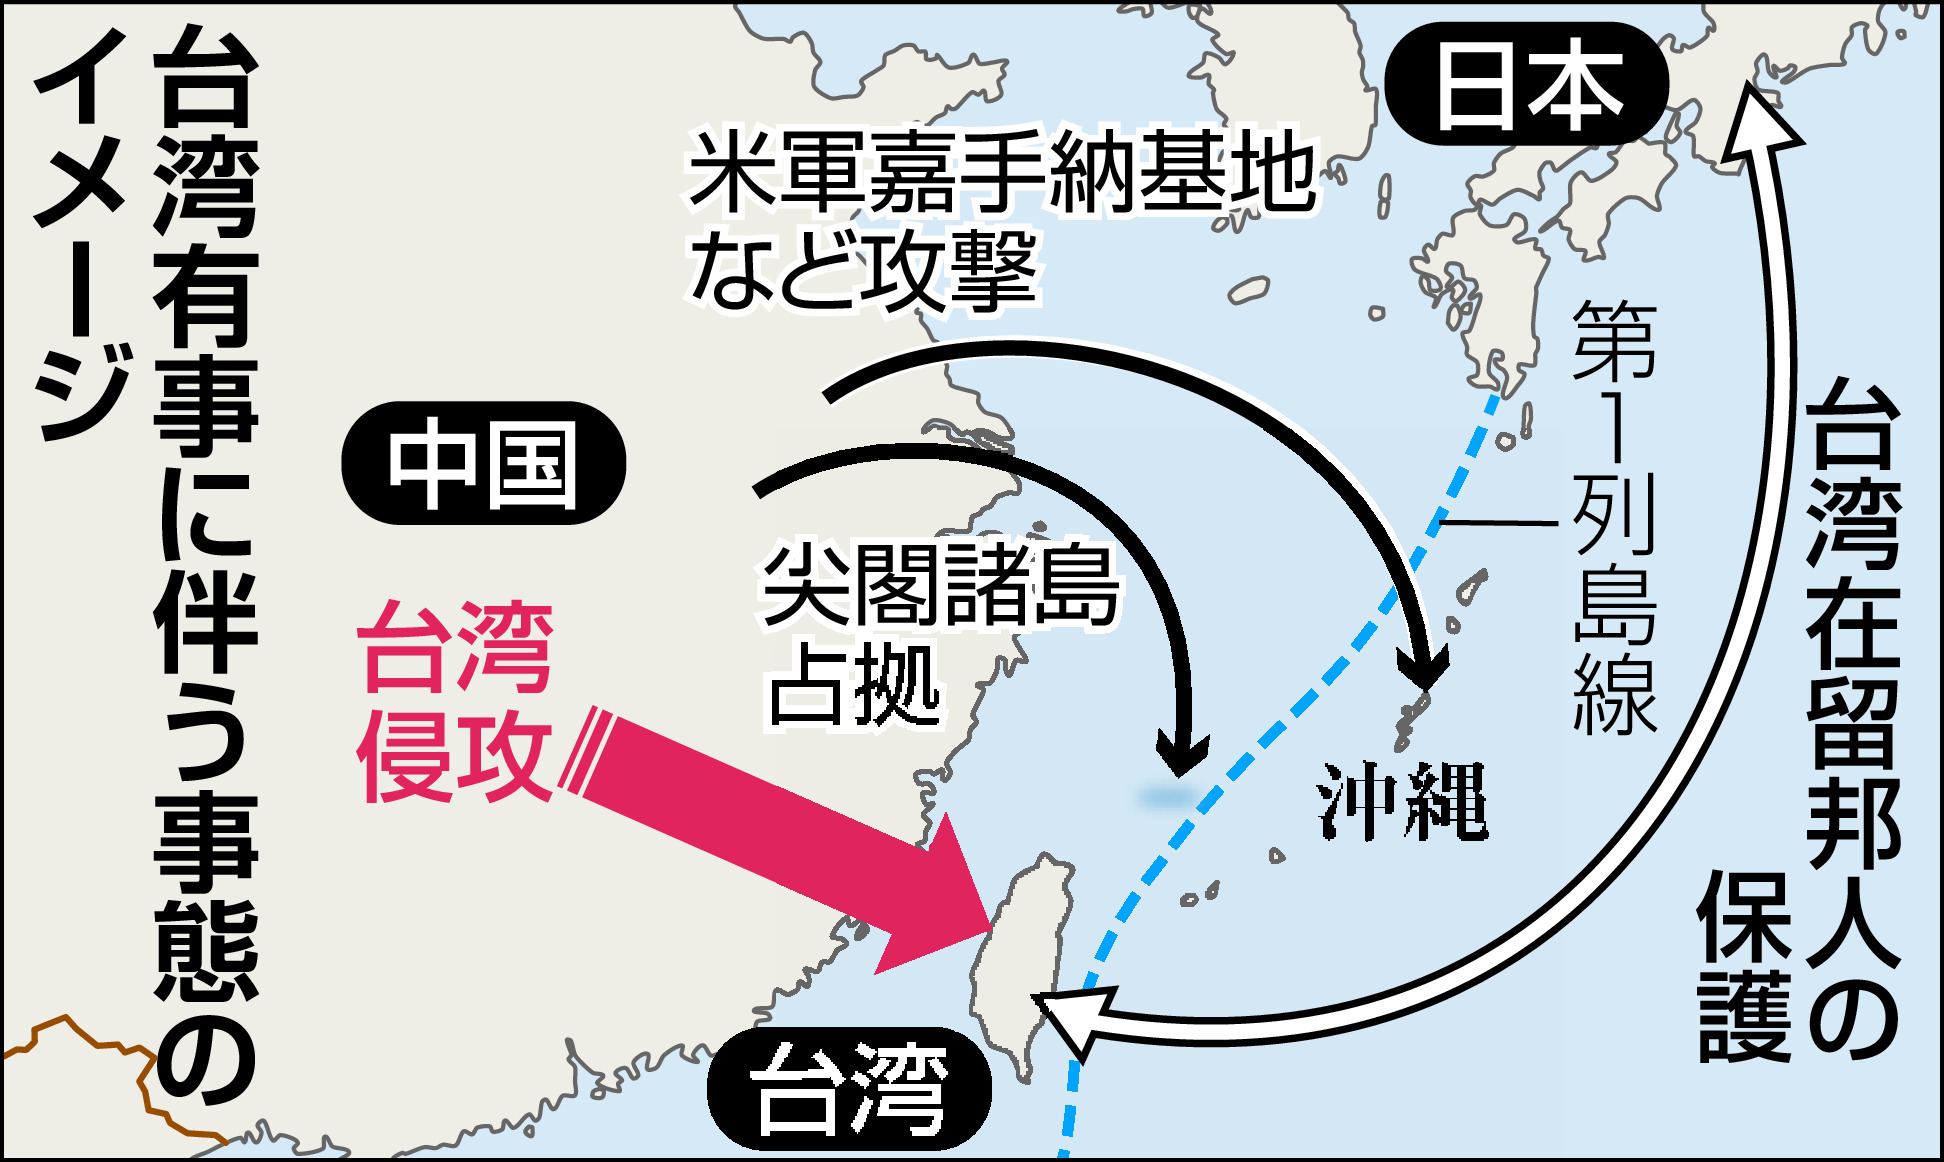 日本 侵攻 中国 中国が台湾侵攻を決断へ その日、日本が〝戦場〟になる（Wedge）